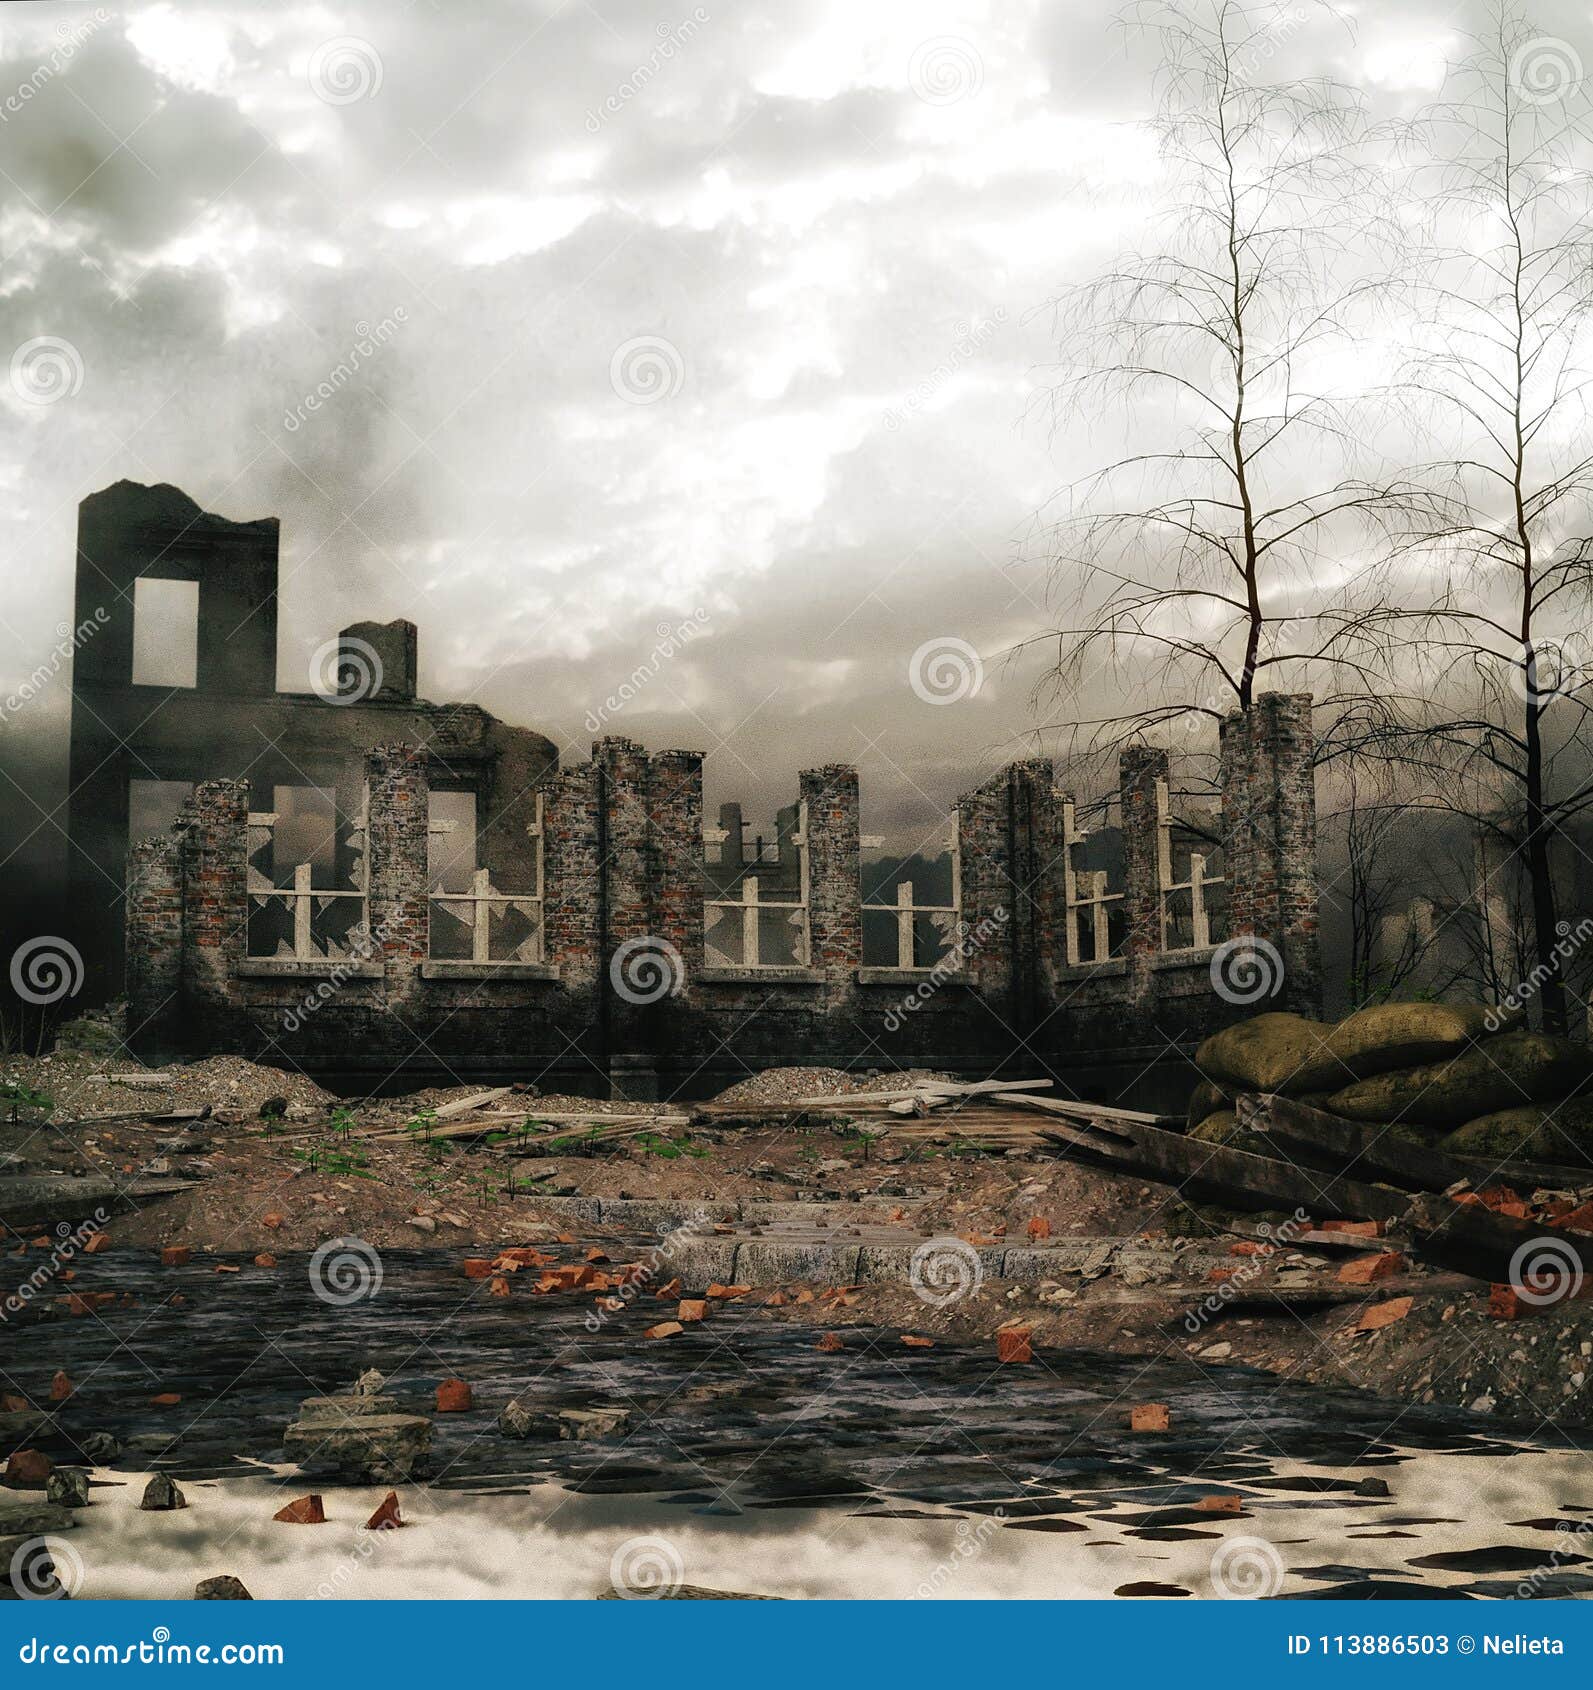 Destroyed War City Background Stock Illustration - Illustration of dead,  destruction: 113886503